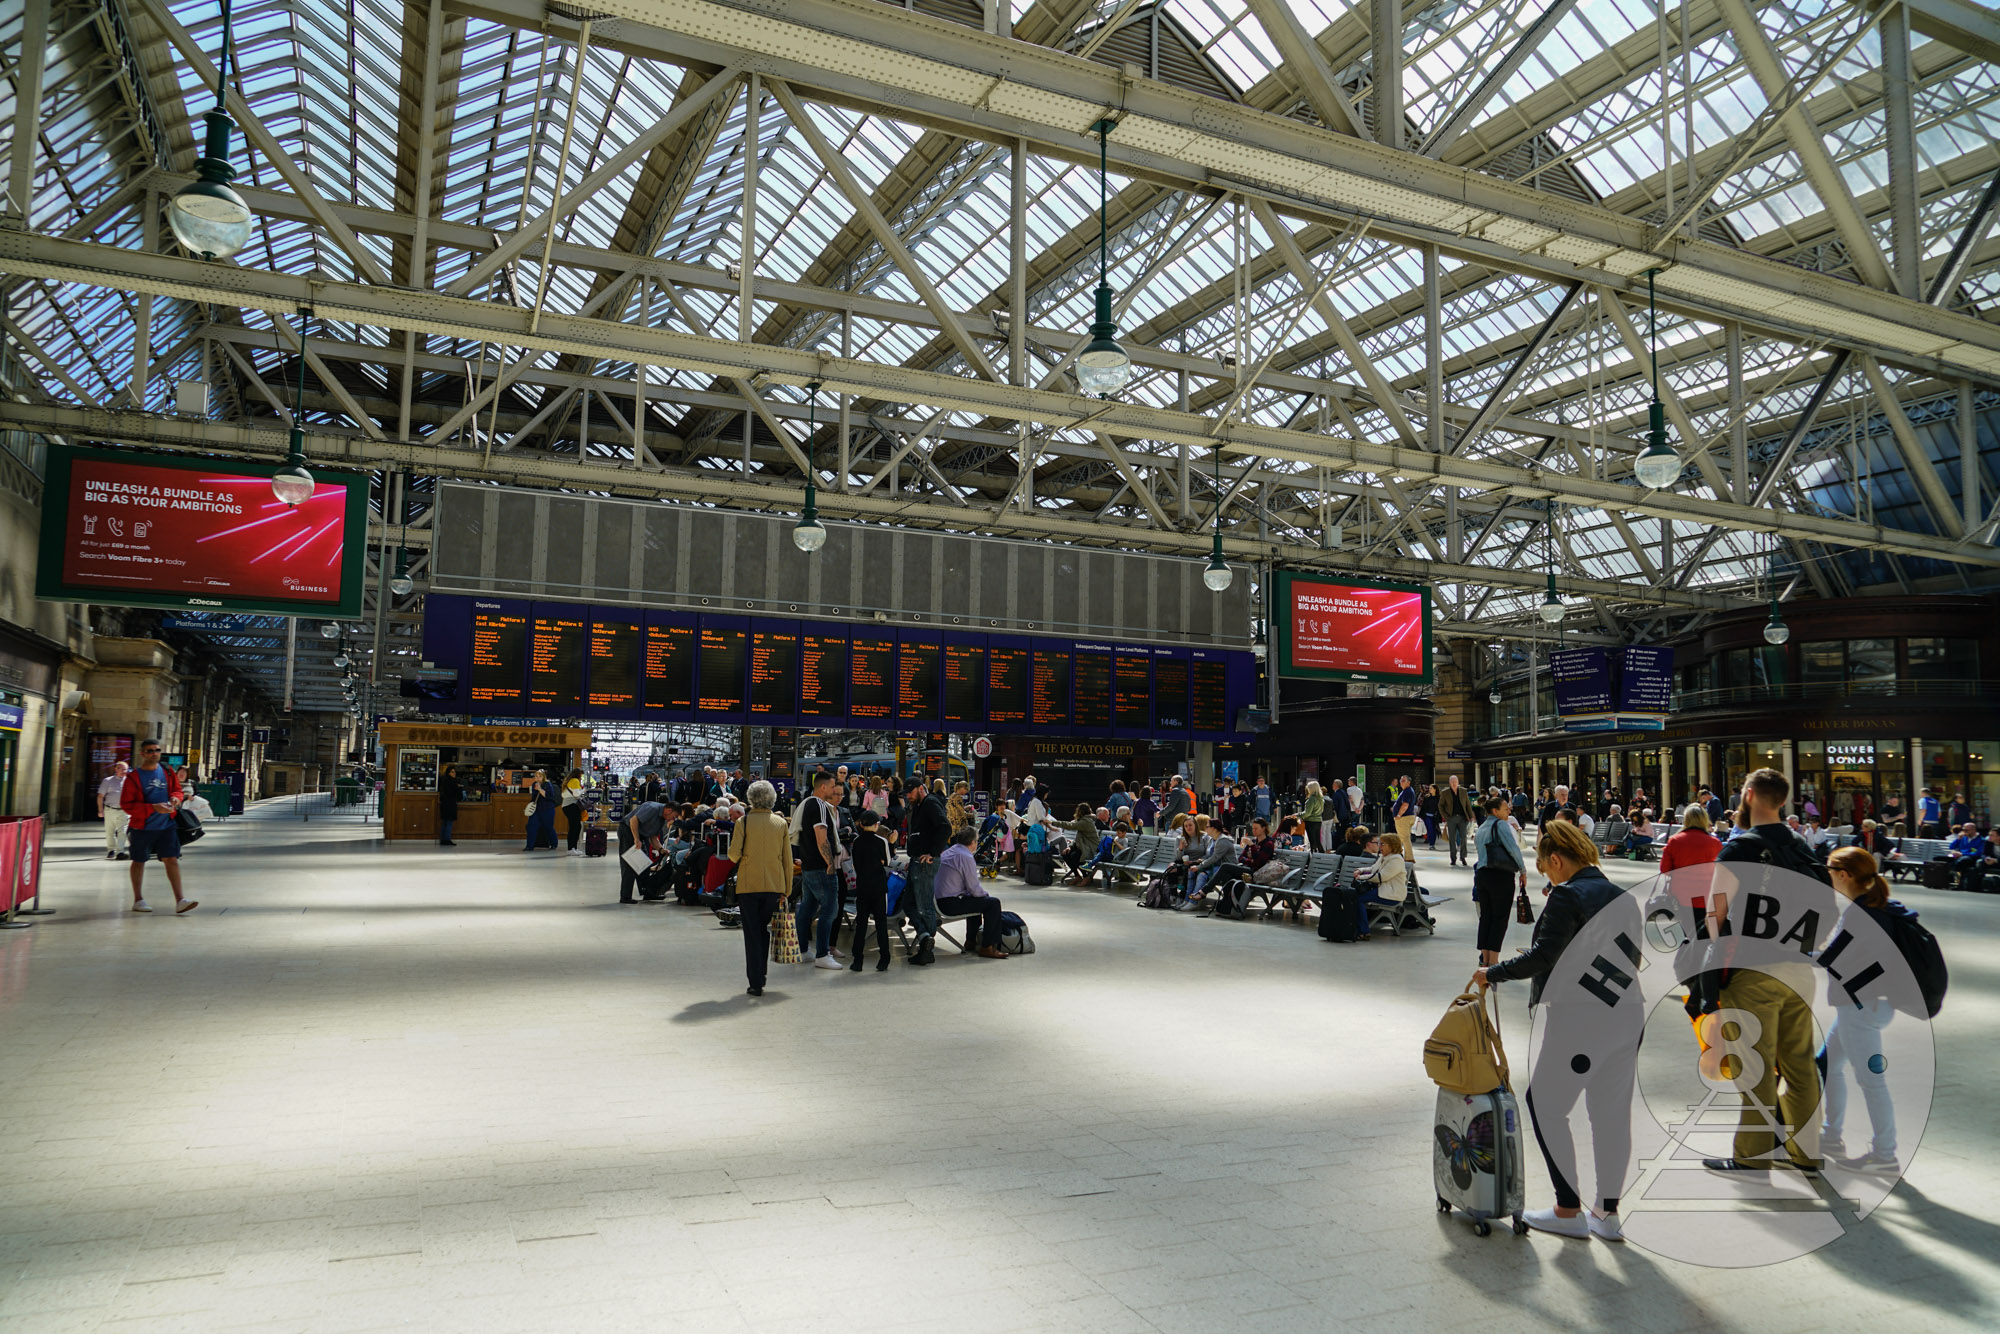 Glasgow Central Station, Glasgow, Scotland, UK, 2018.